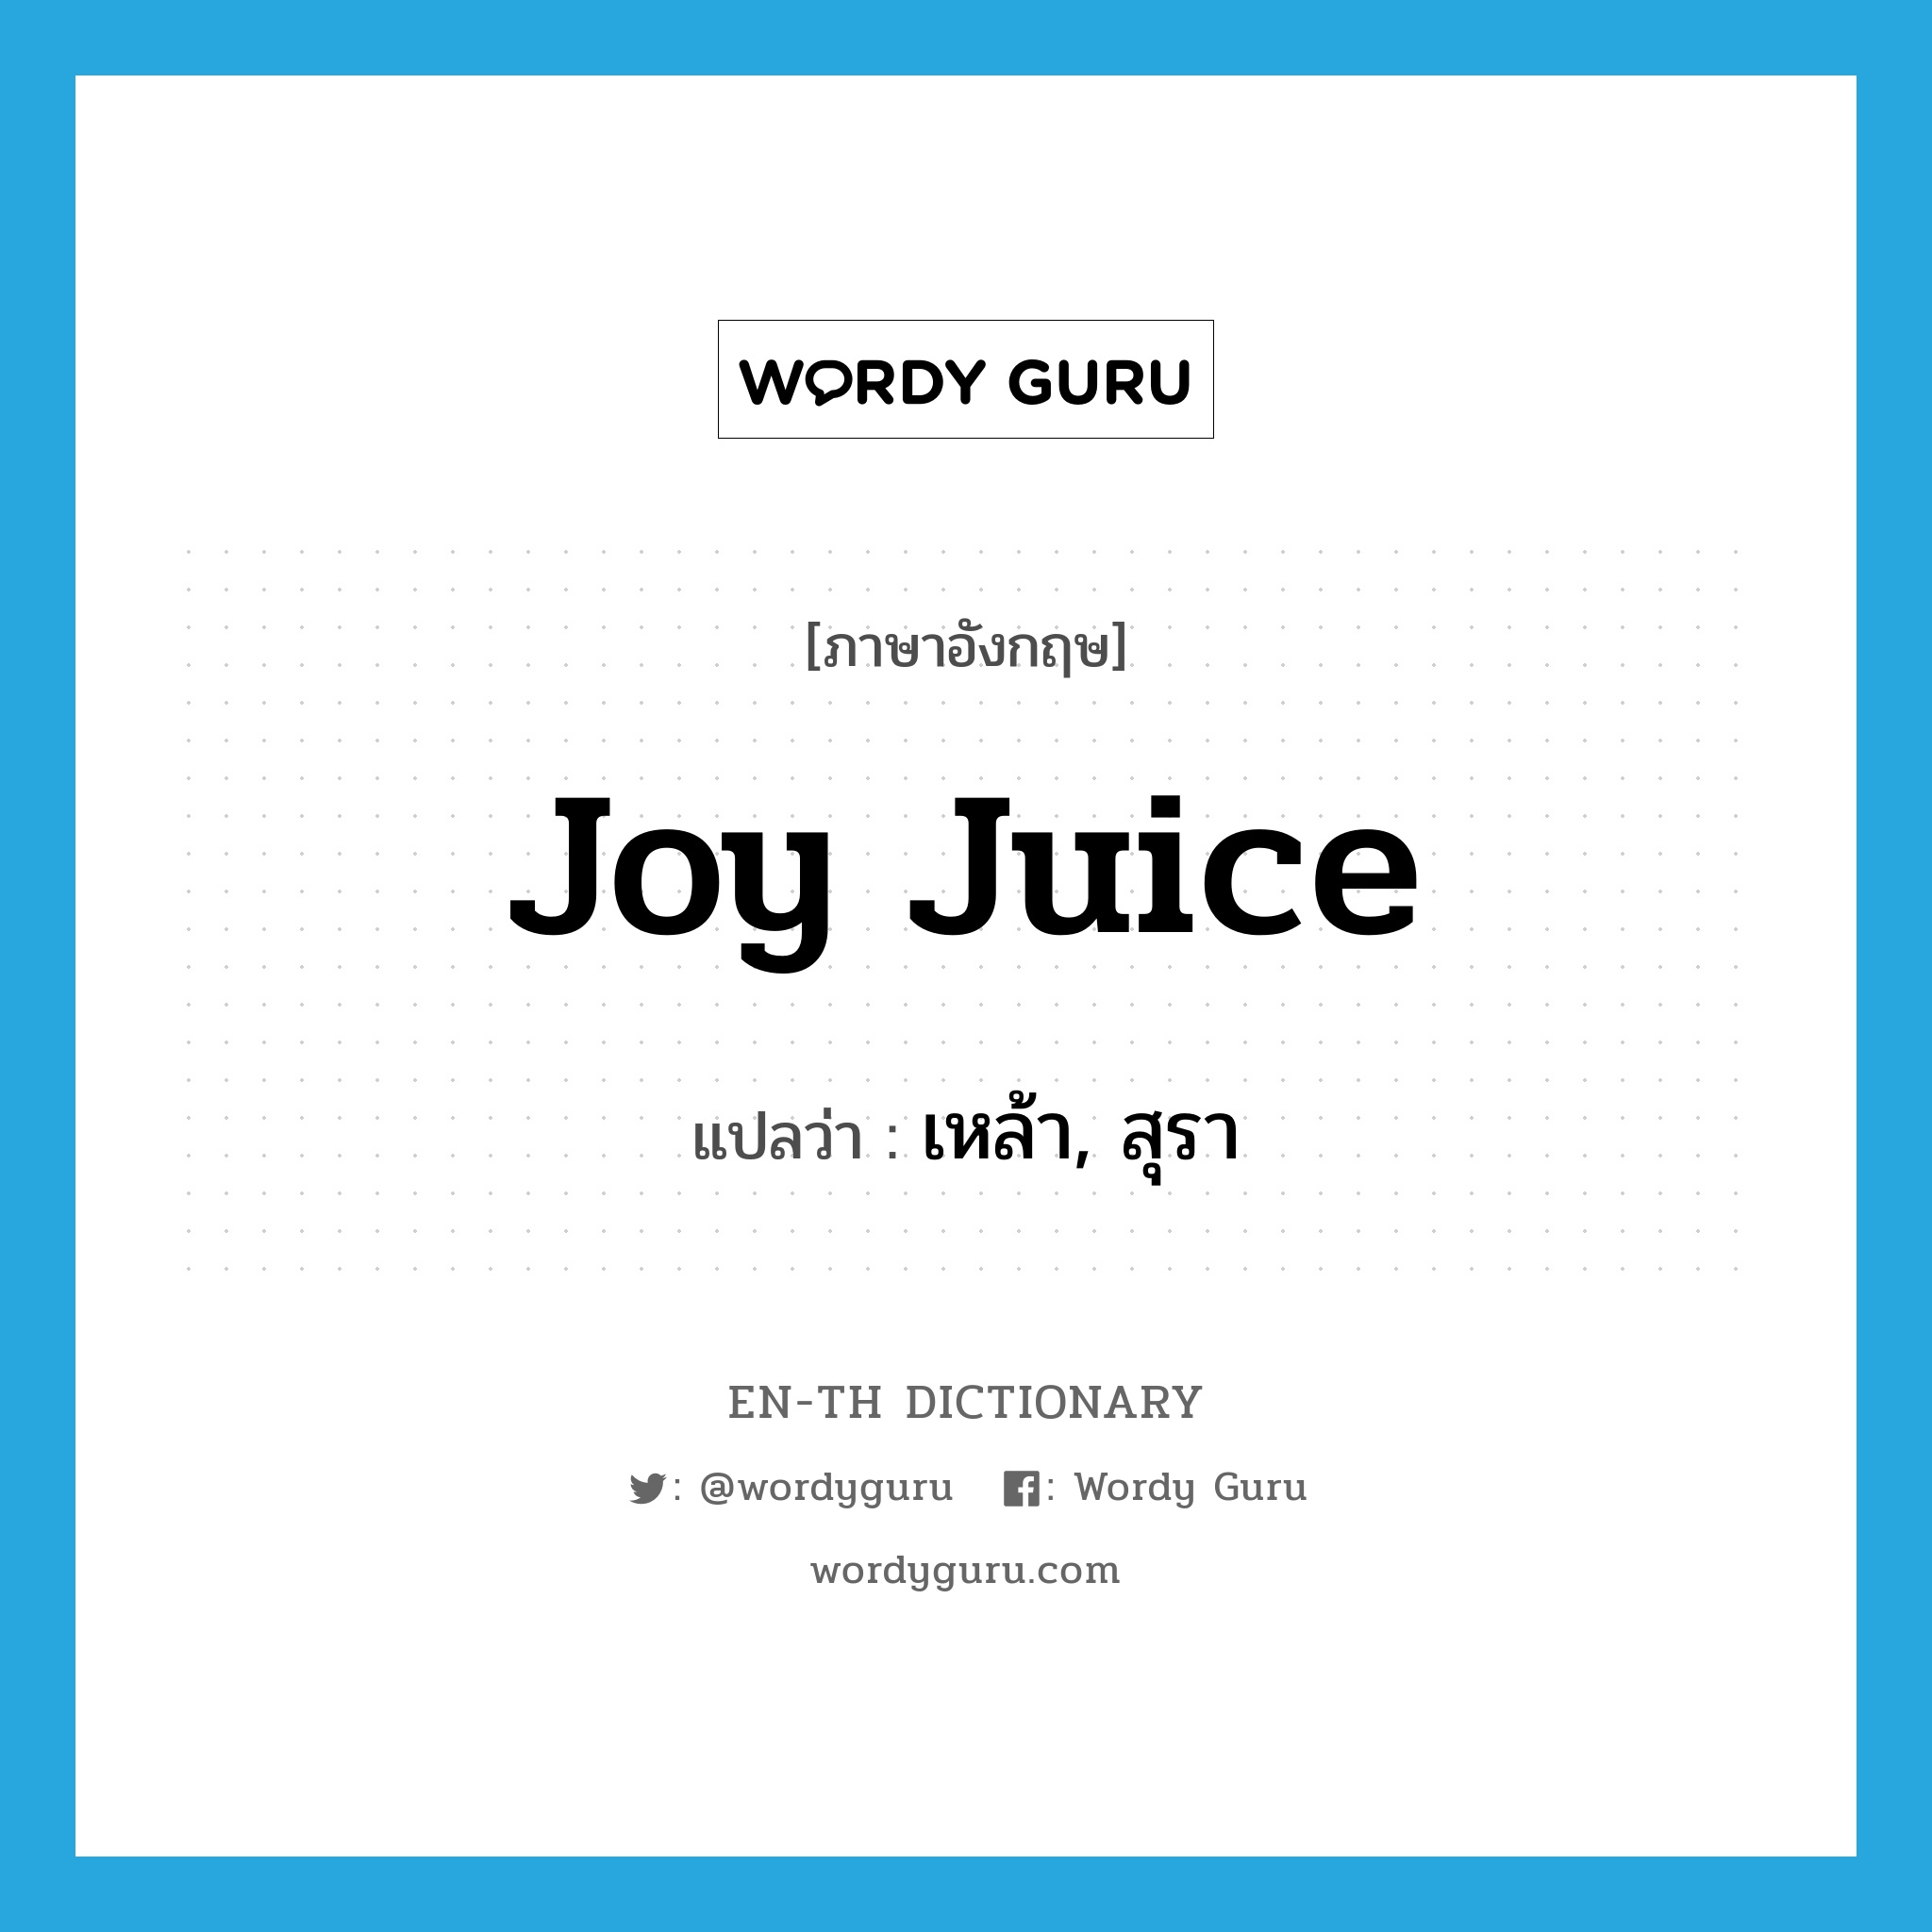 เหล้า, สุรา ภาษาอังกฤษ?, คำศัพท์ภาษาอังกฤษ เหล้า, สุรา แปลว่า joy juice ประเภท SL หมวด SL